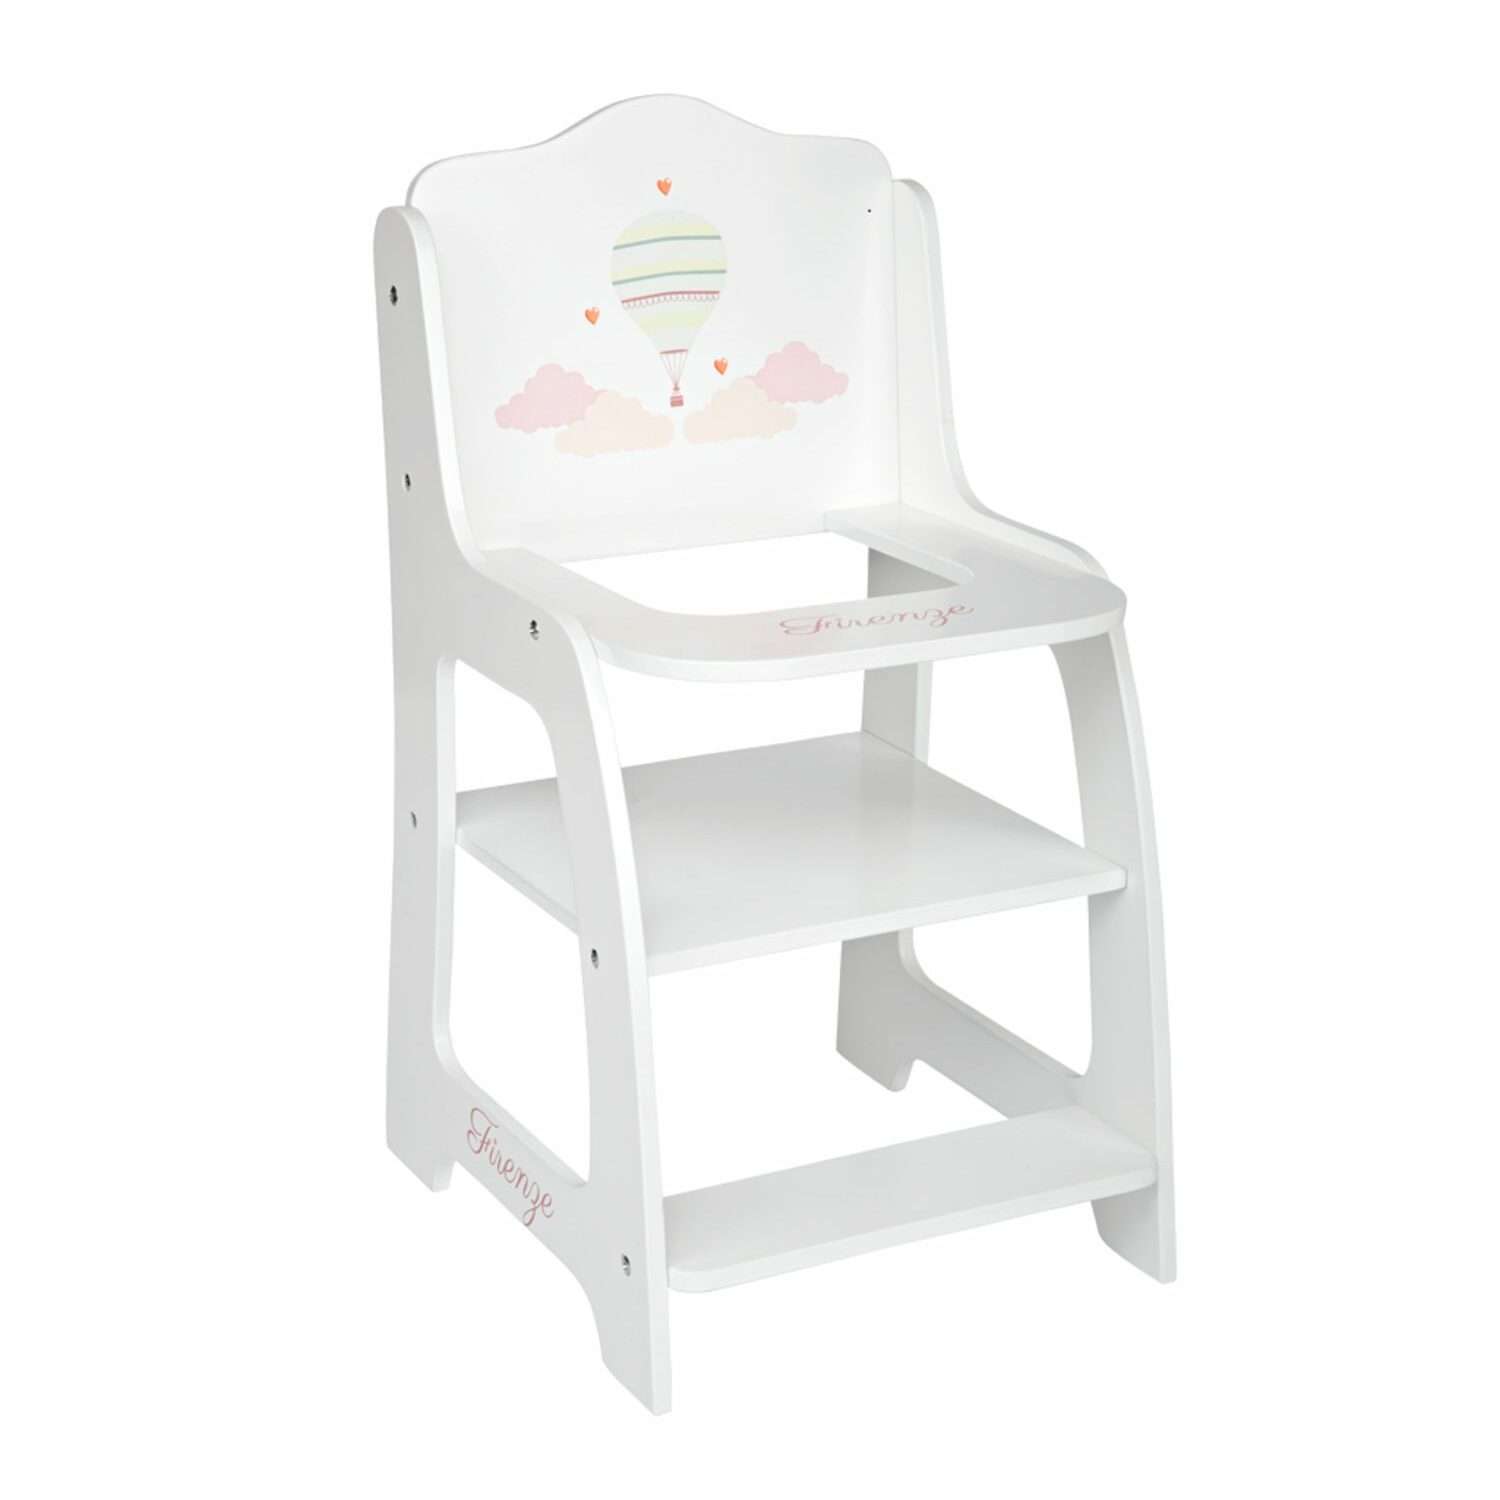 Мебель для кукол Arias Firenze стульчик для кормления деревянный Т22160 - фото 1